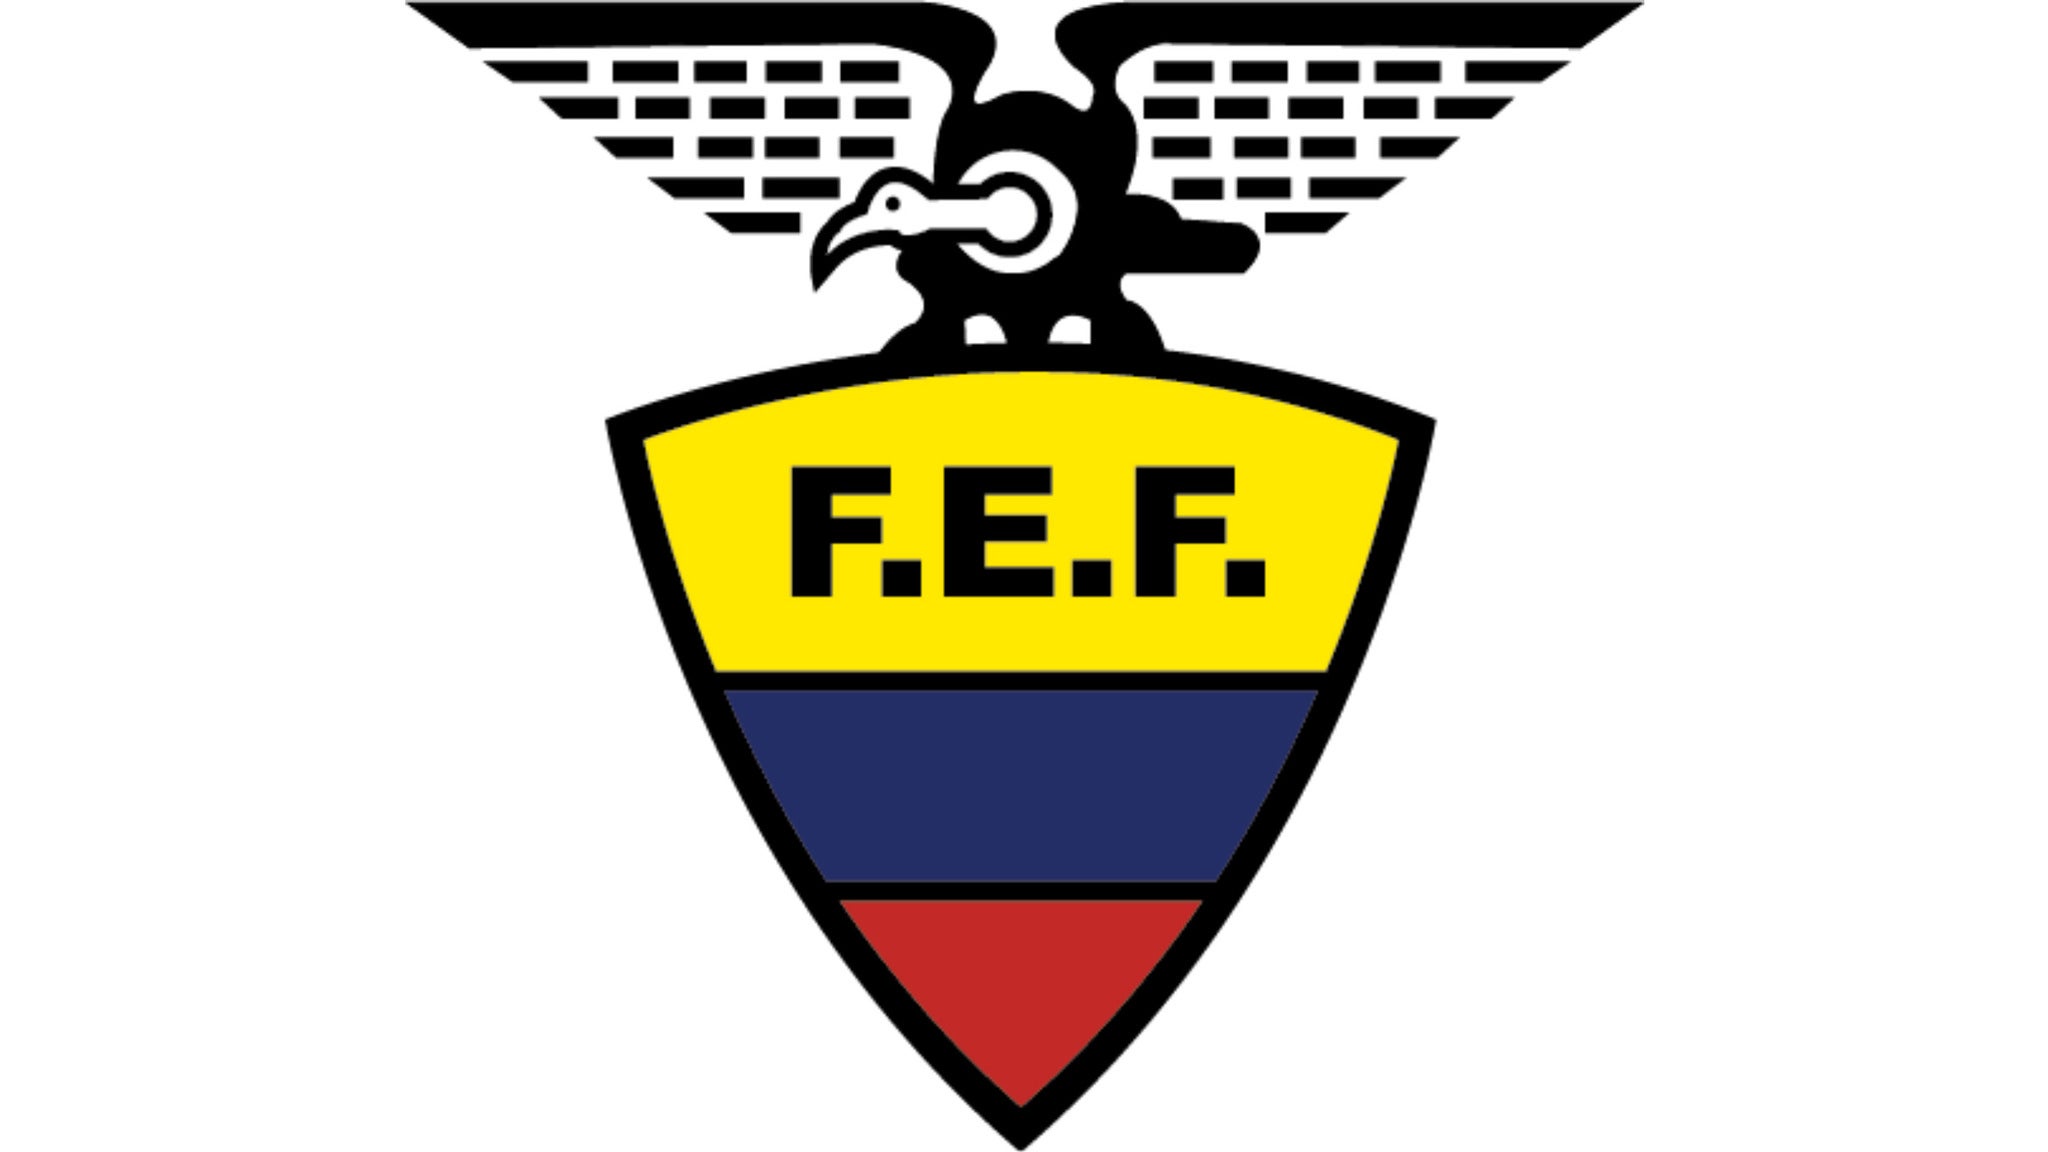 Ecuador National Football Team presale information on freepresalepasswords.com